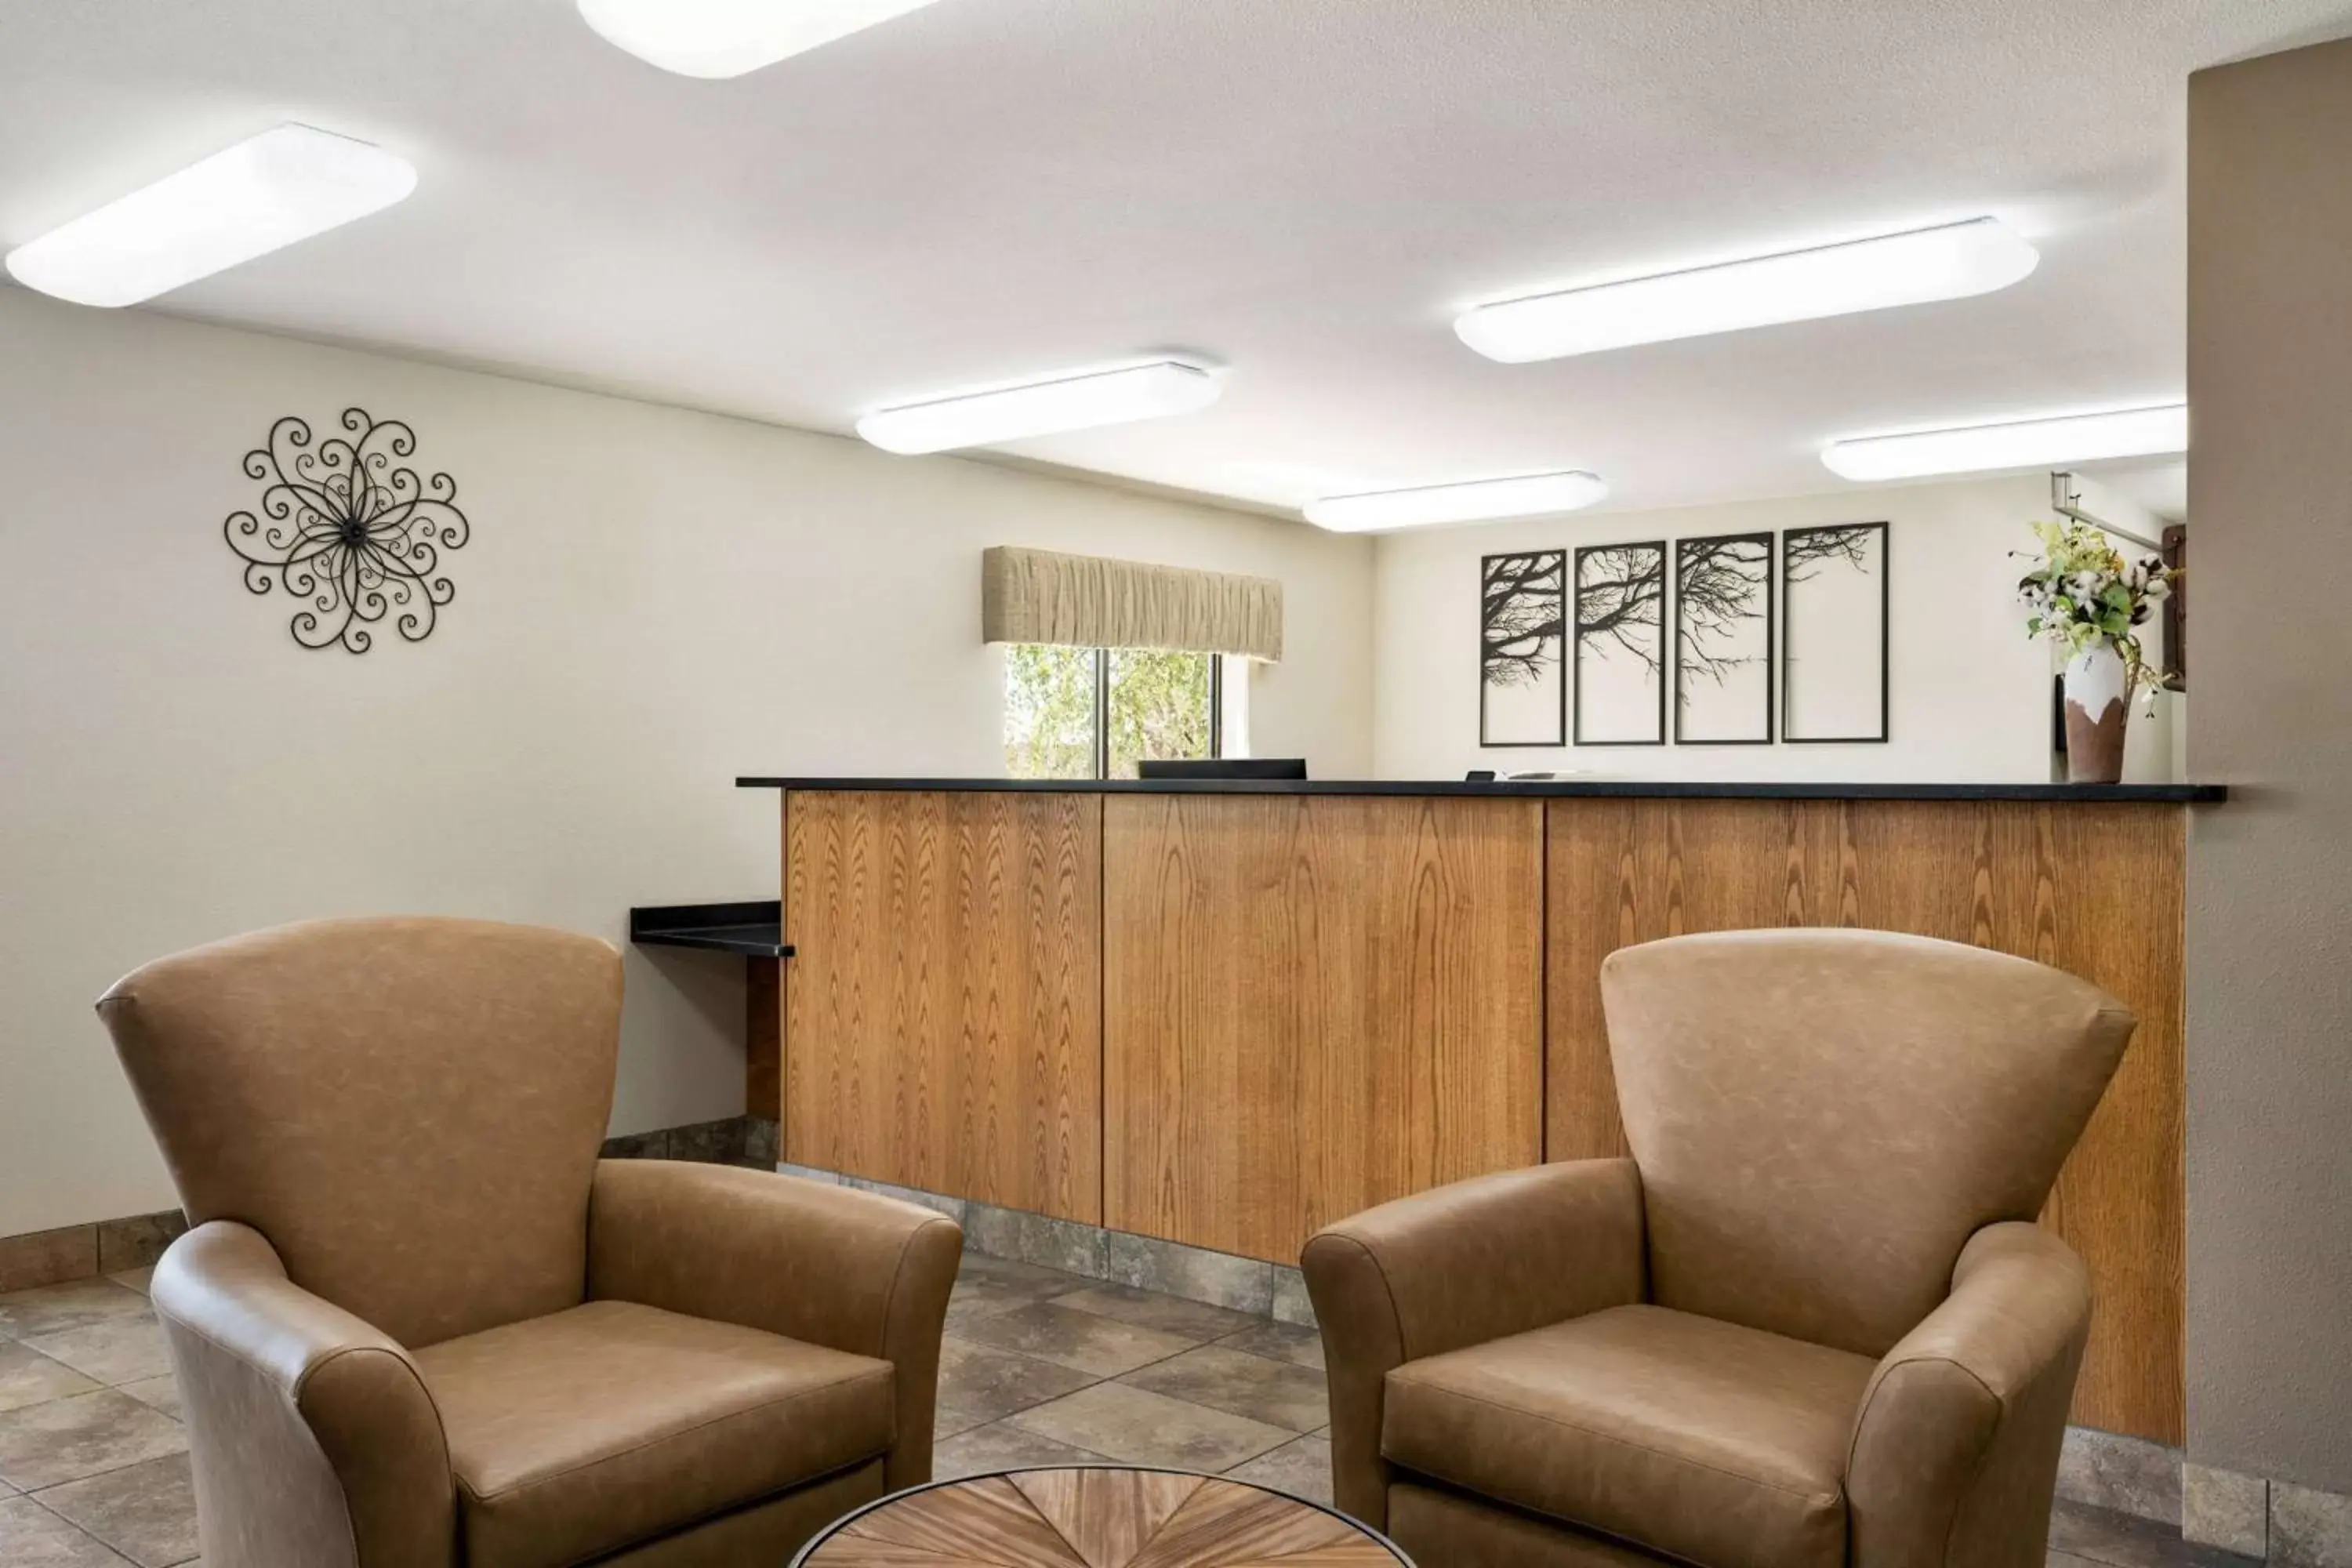 Lobby or reception, Lobby/Reception in Baymont by Wyndham Elko